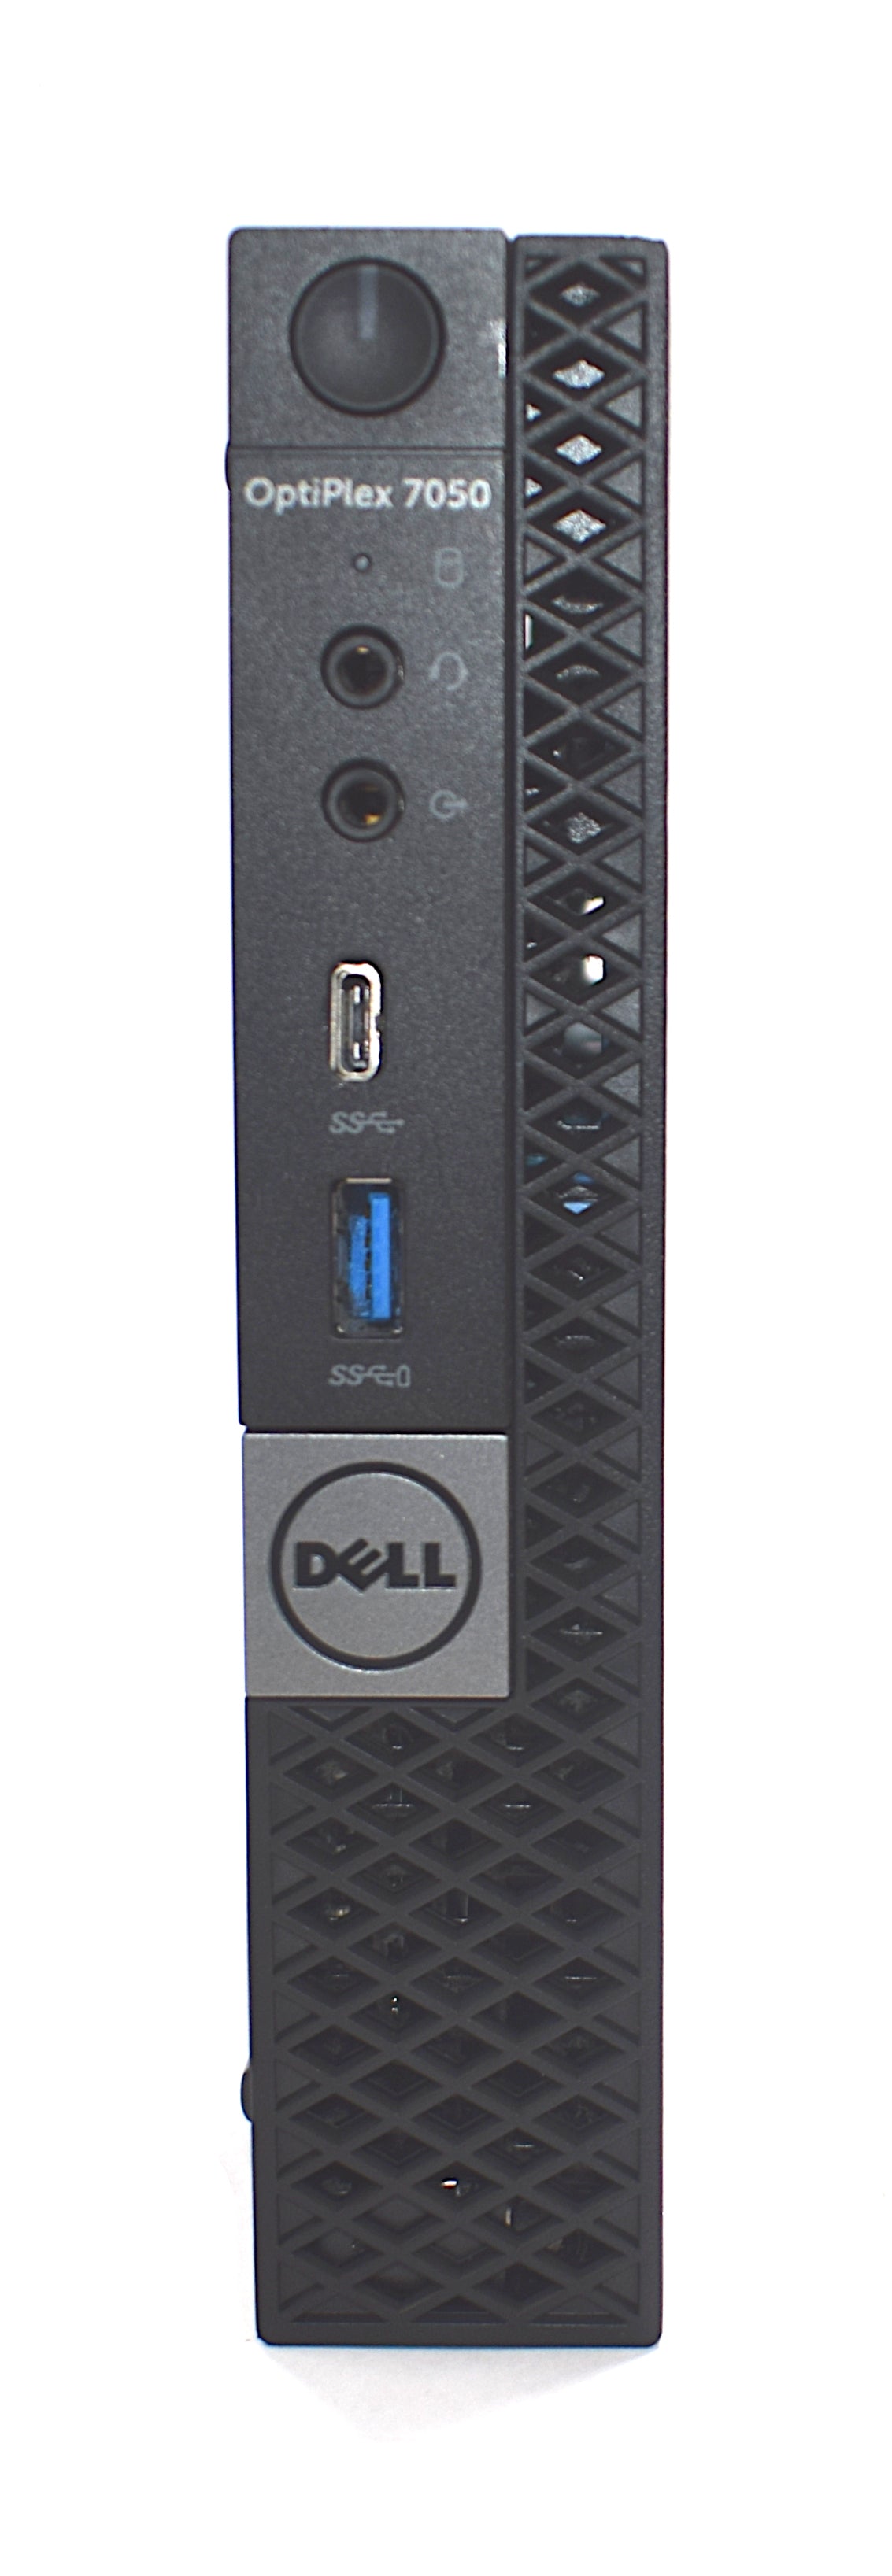 Dell Optiplex 7050 Micro PC, Core i5 7th Gen, 8GB RAM, 128GB SSD